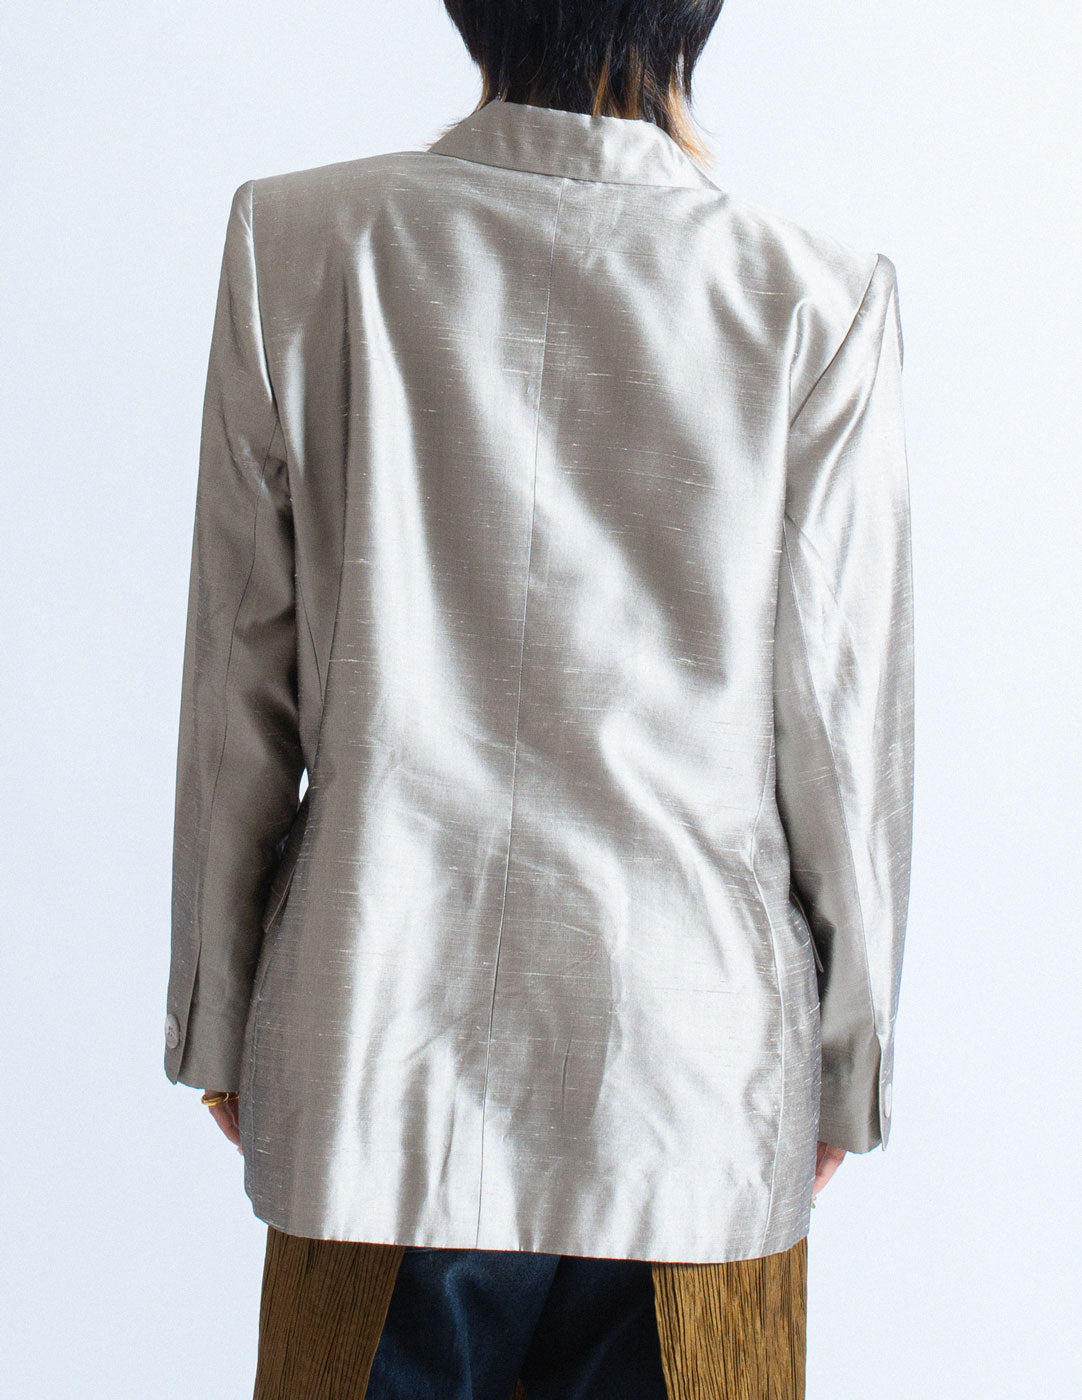 Yves Saint Laurent vintage sliver slik blazer back detail